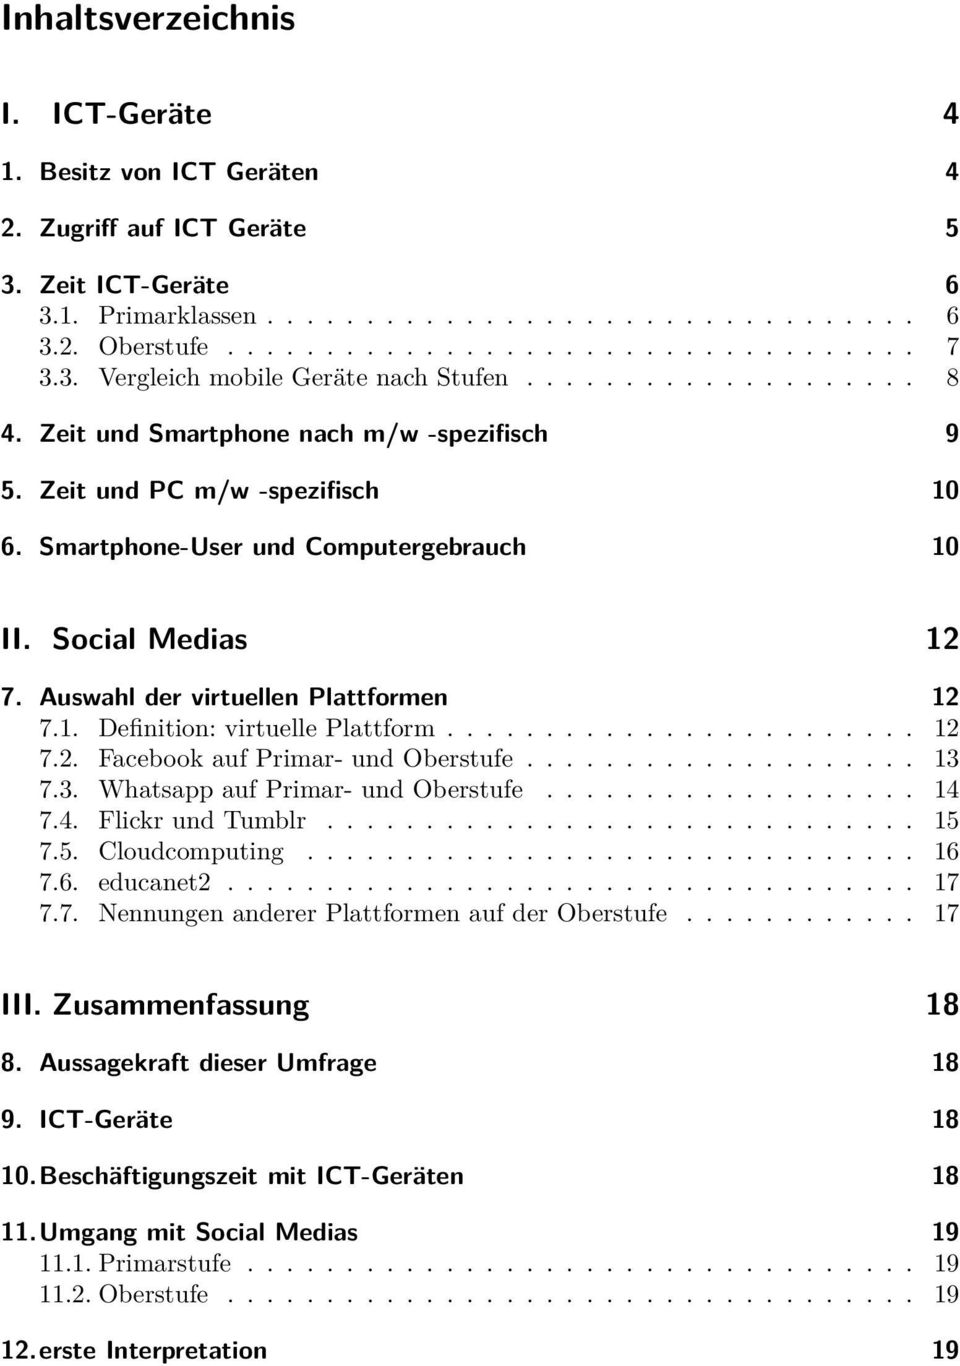 Social Medias 12 7. Auswahl der virtuellen Plattformen 12 7.1. Definition: virtuelle Plattform........................ 12 7.2. Facebook auf Primar- und Oberstufe.................... 13 